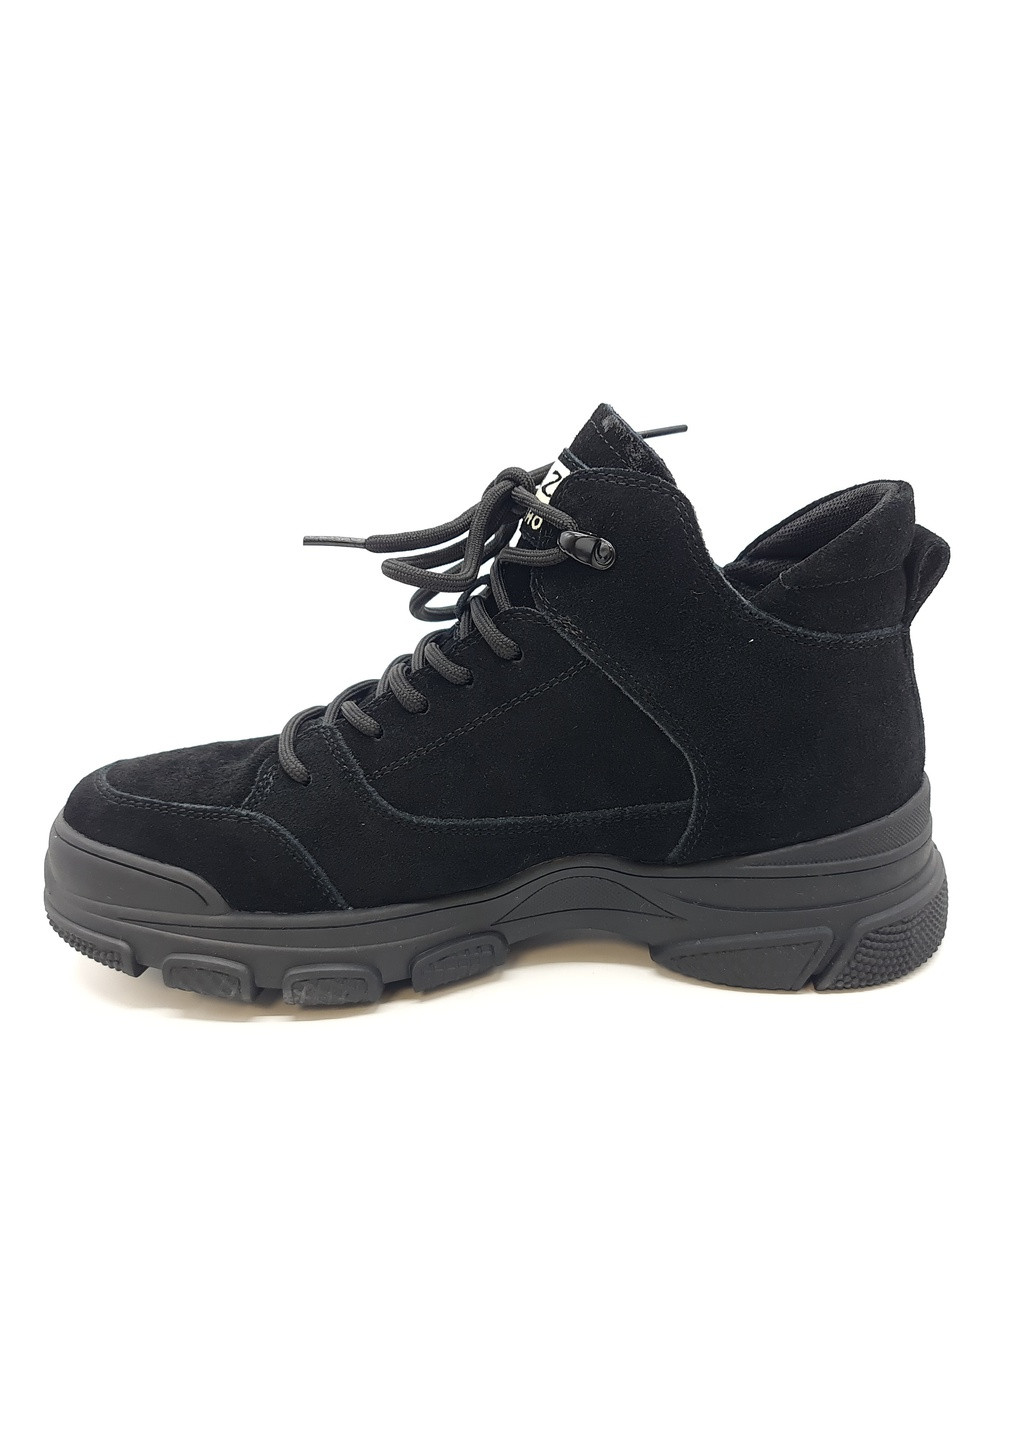 Осенние женские ботинки черные замшевые l-11-7 23 см (р) Lonza